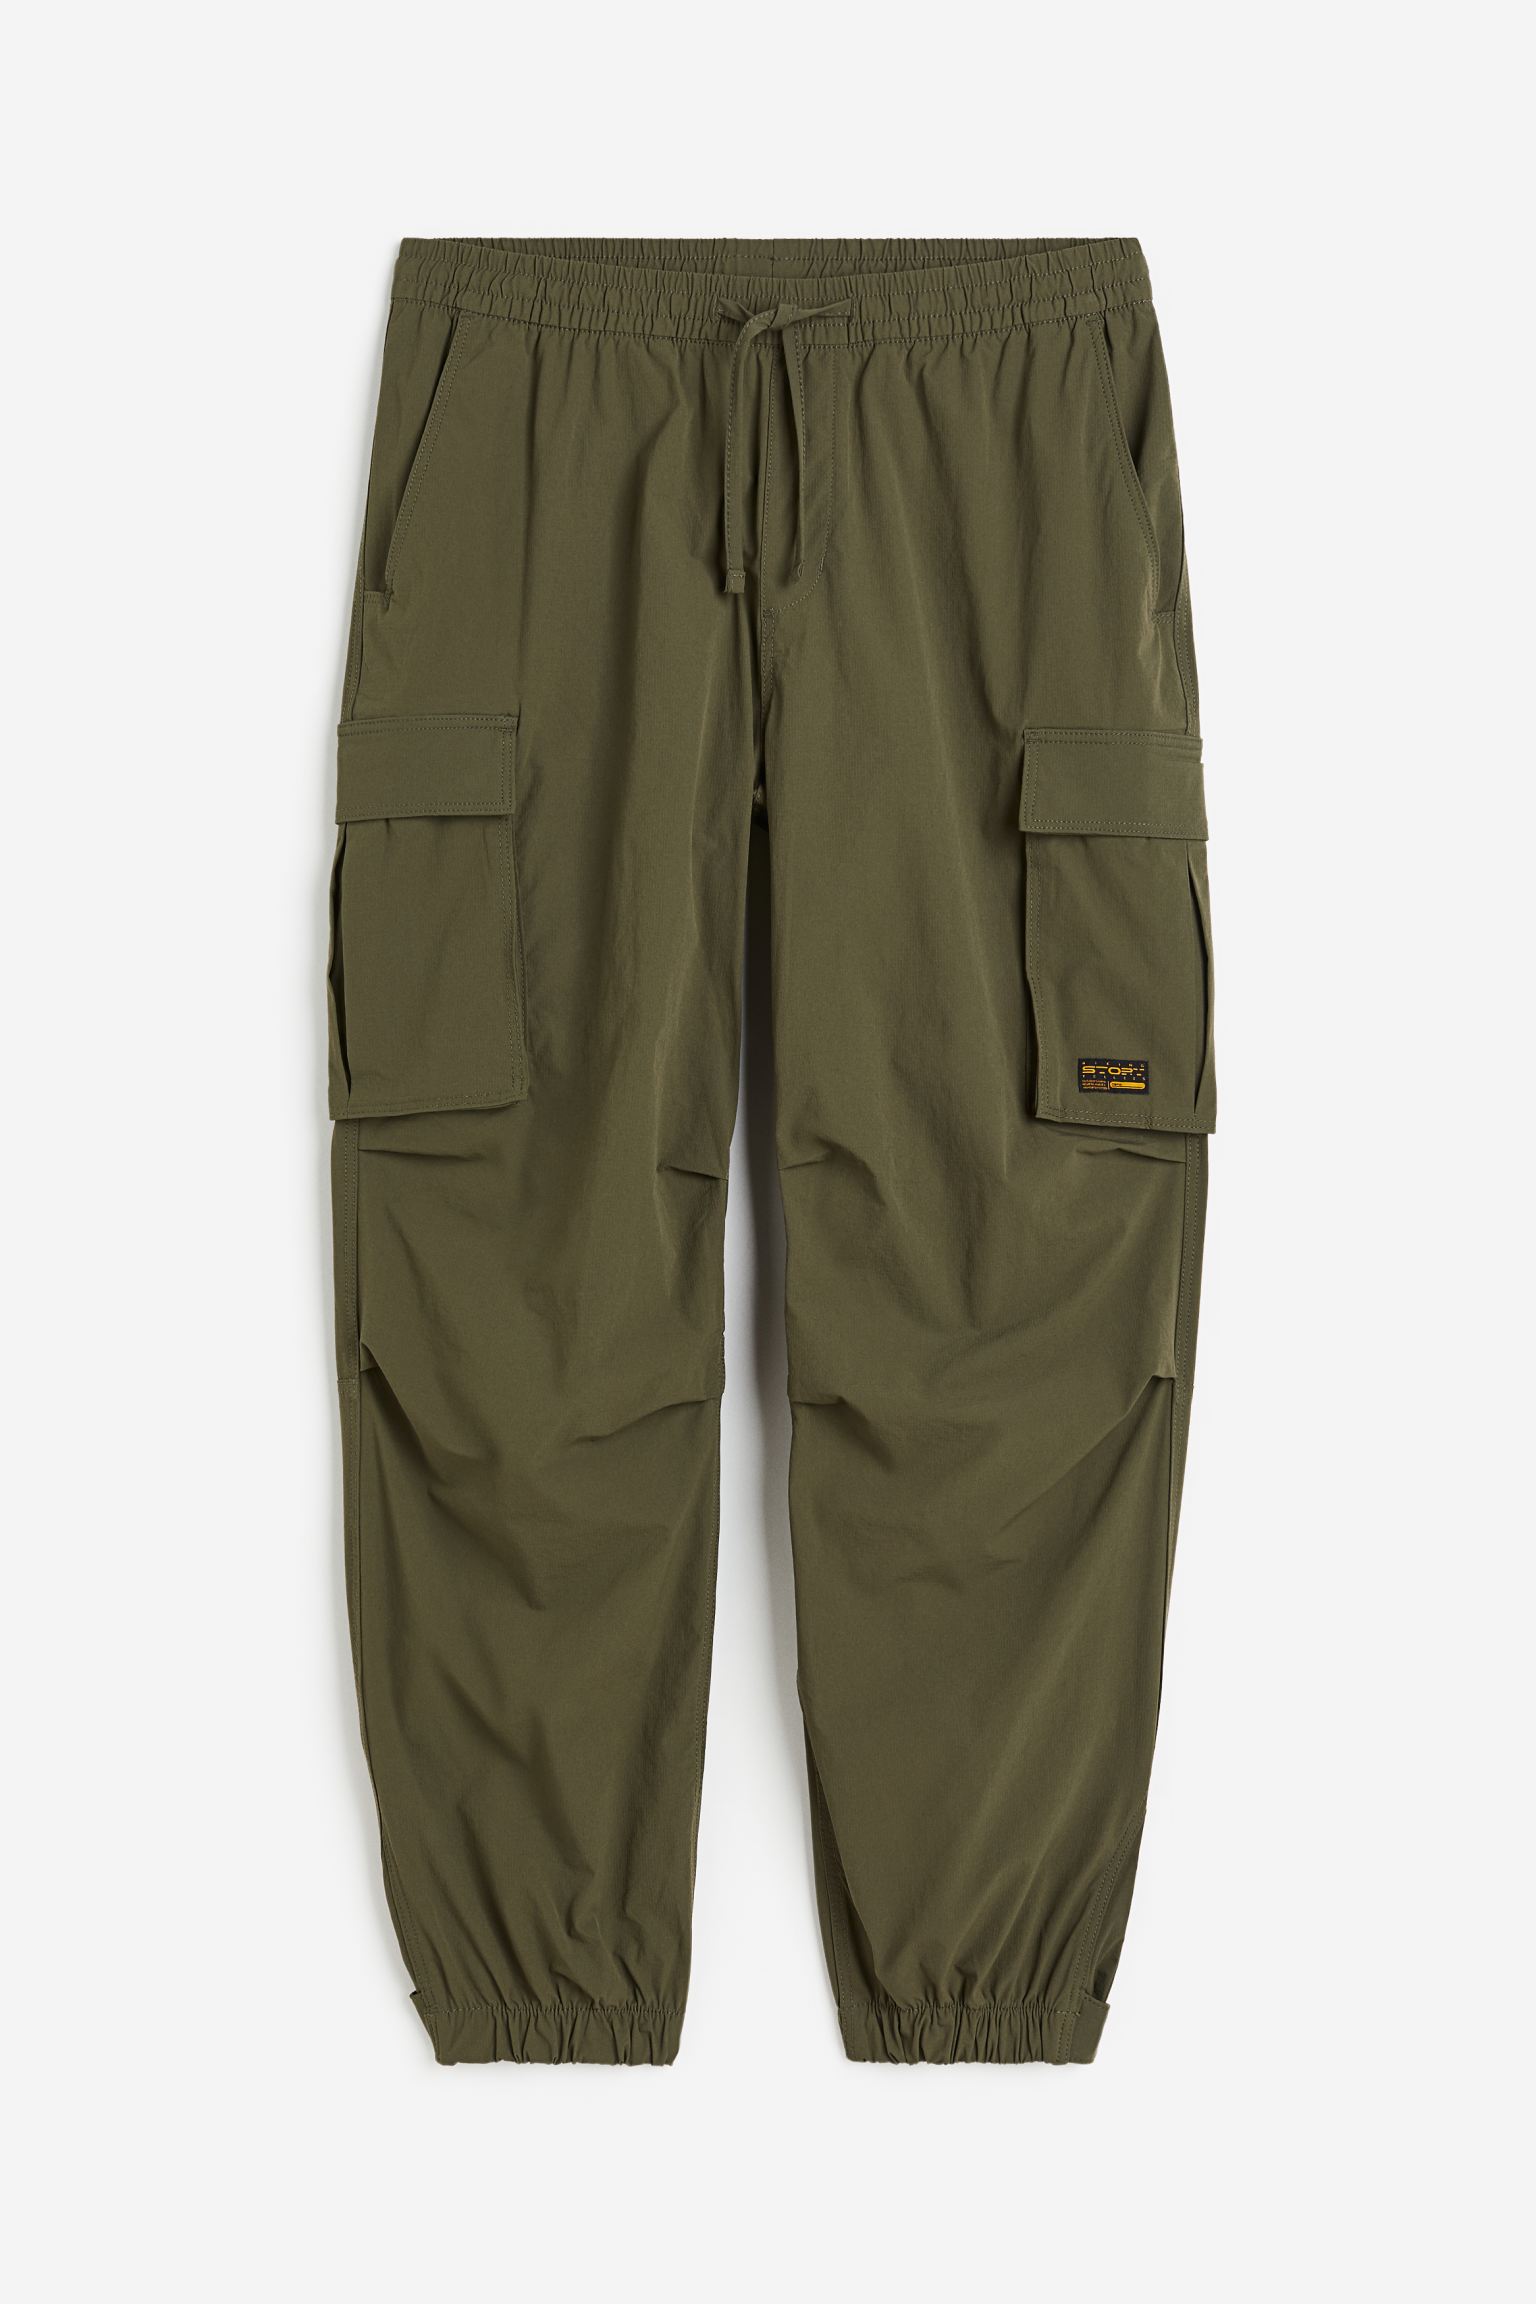 Брюки H&M Relaxed Fit Nylon Cargo, хаки зеленые нейлоновые брюки карго guess originals